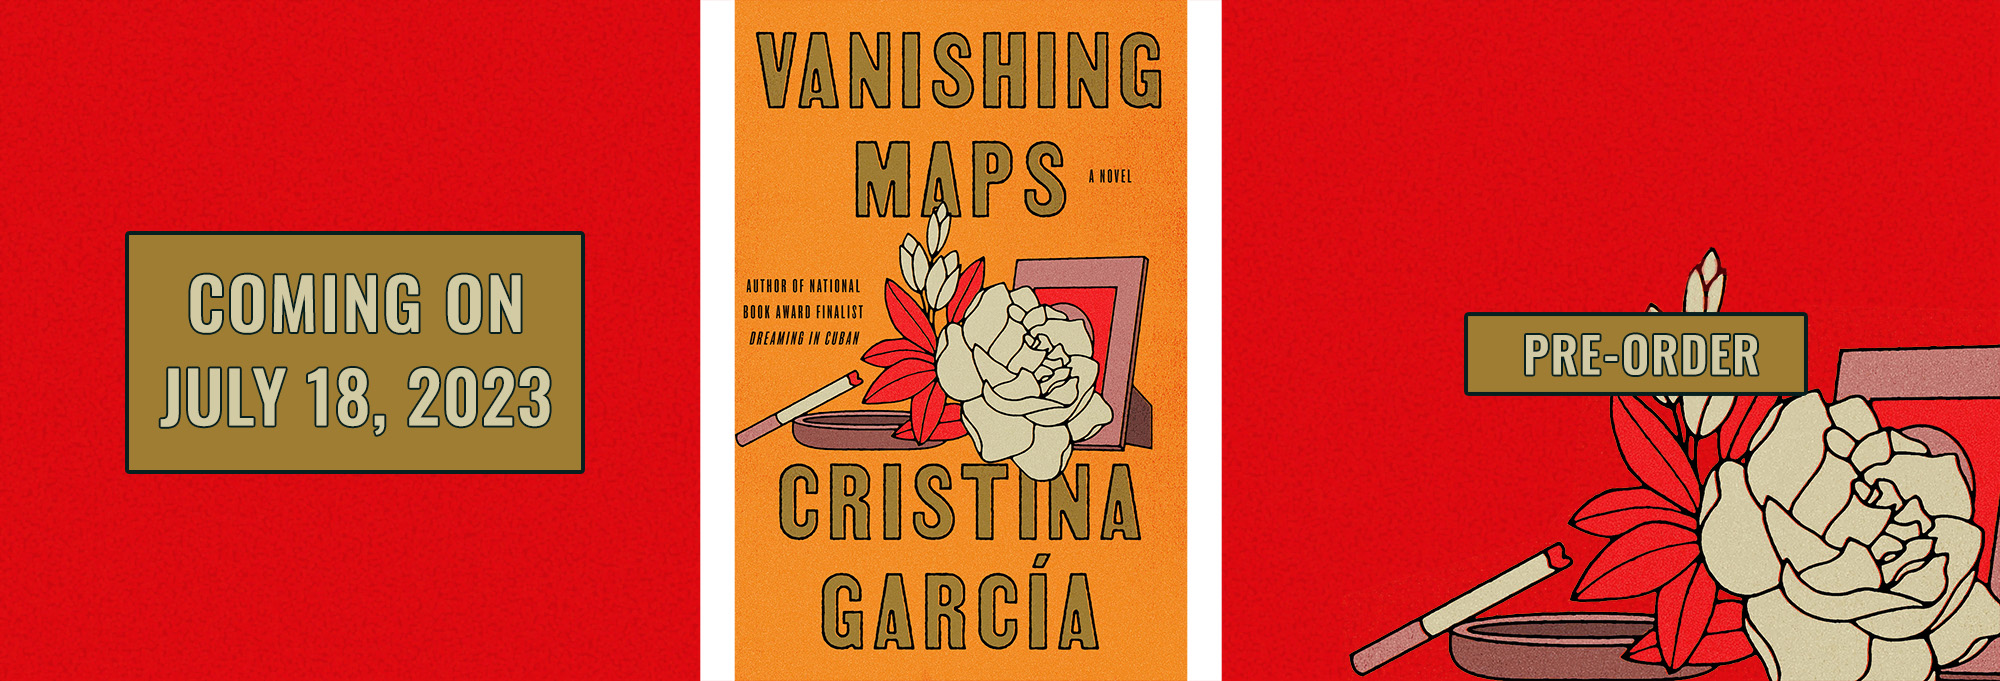 vanishing maps Cristina Garcia